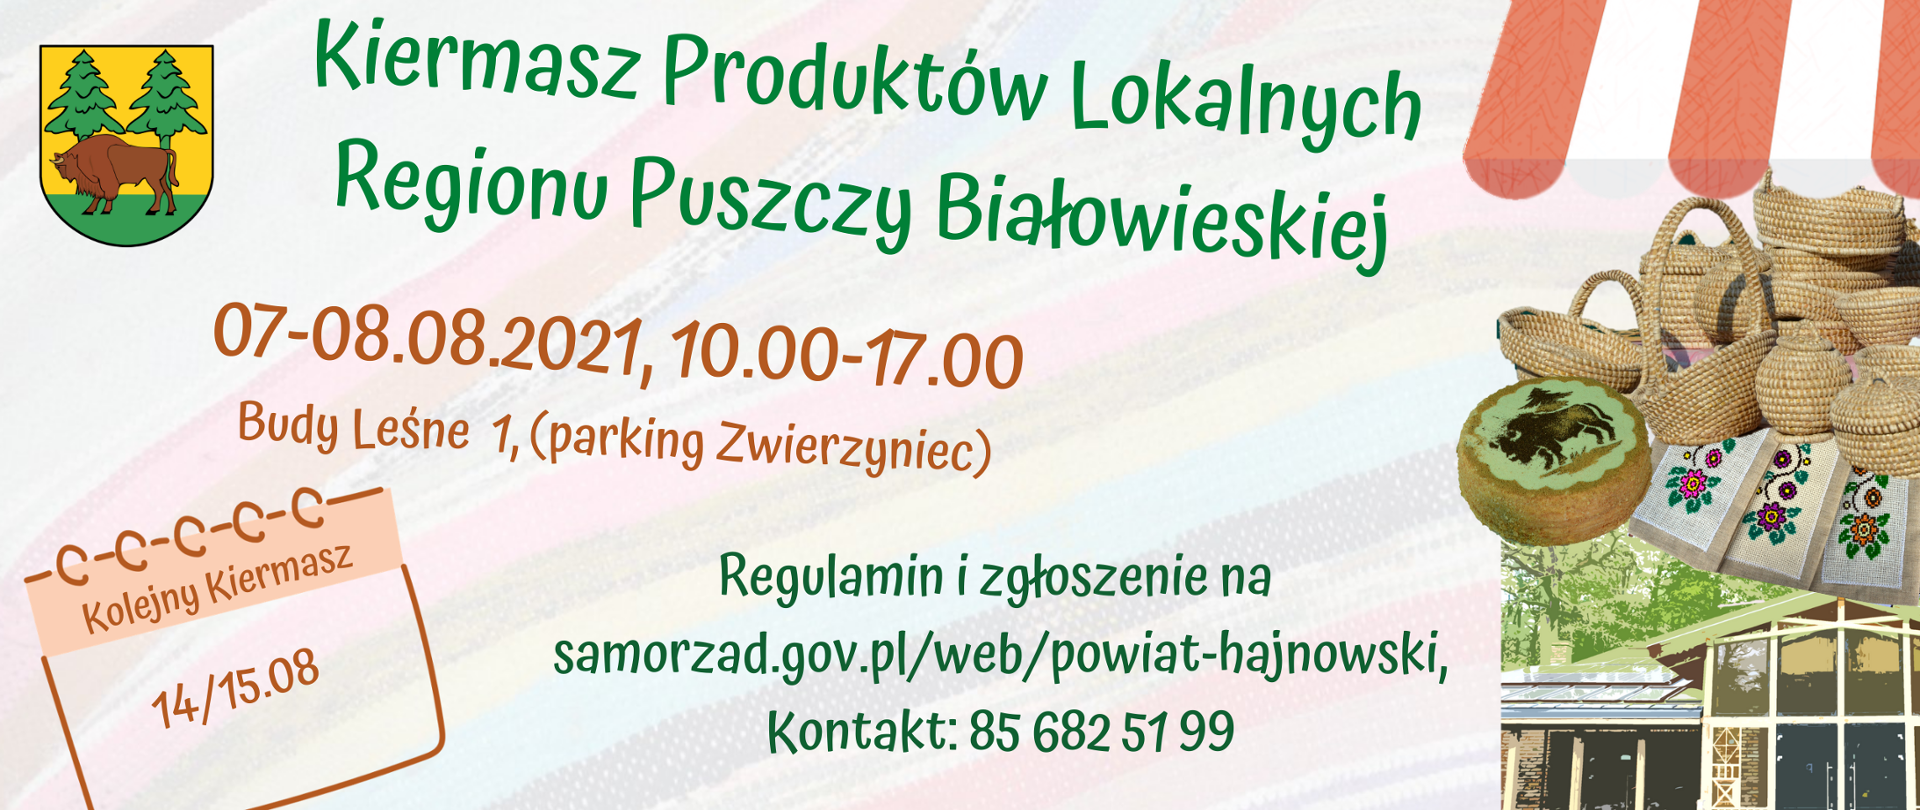 Kiermasz Produktów Lokalnych Regionu Puszczy Białowieskiej - 07-08.08.2021, godz. 10.00-17.00 Budy Leśne 1 (parking Zwierzyniec)